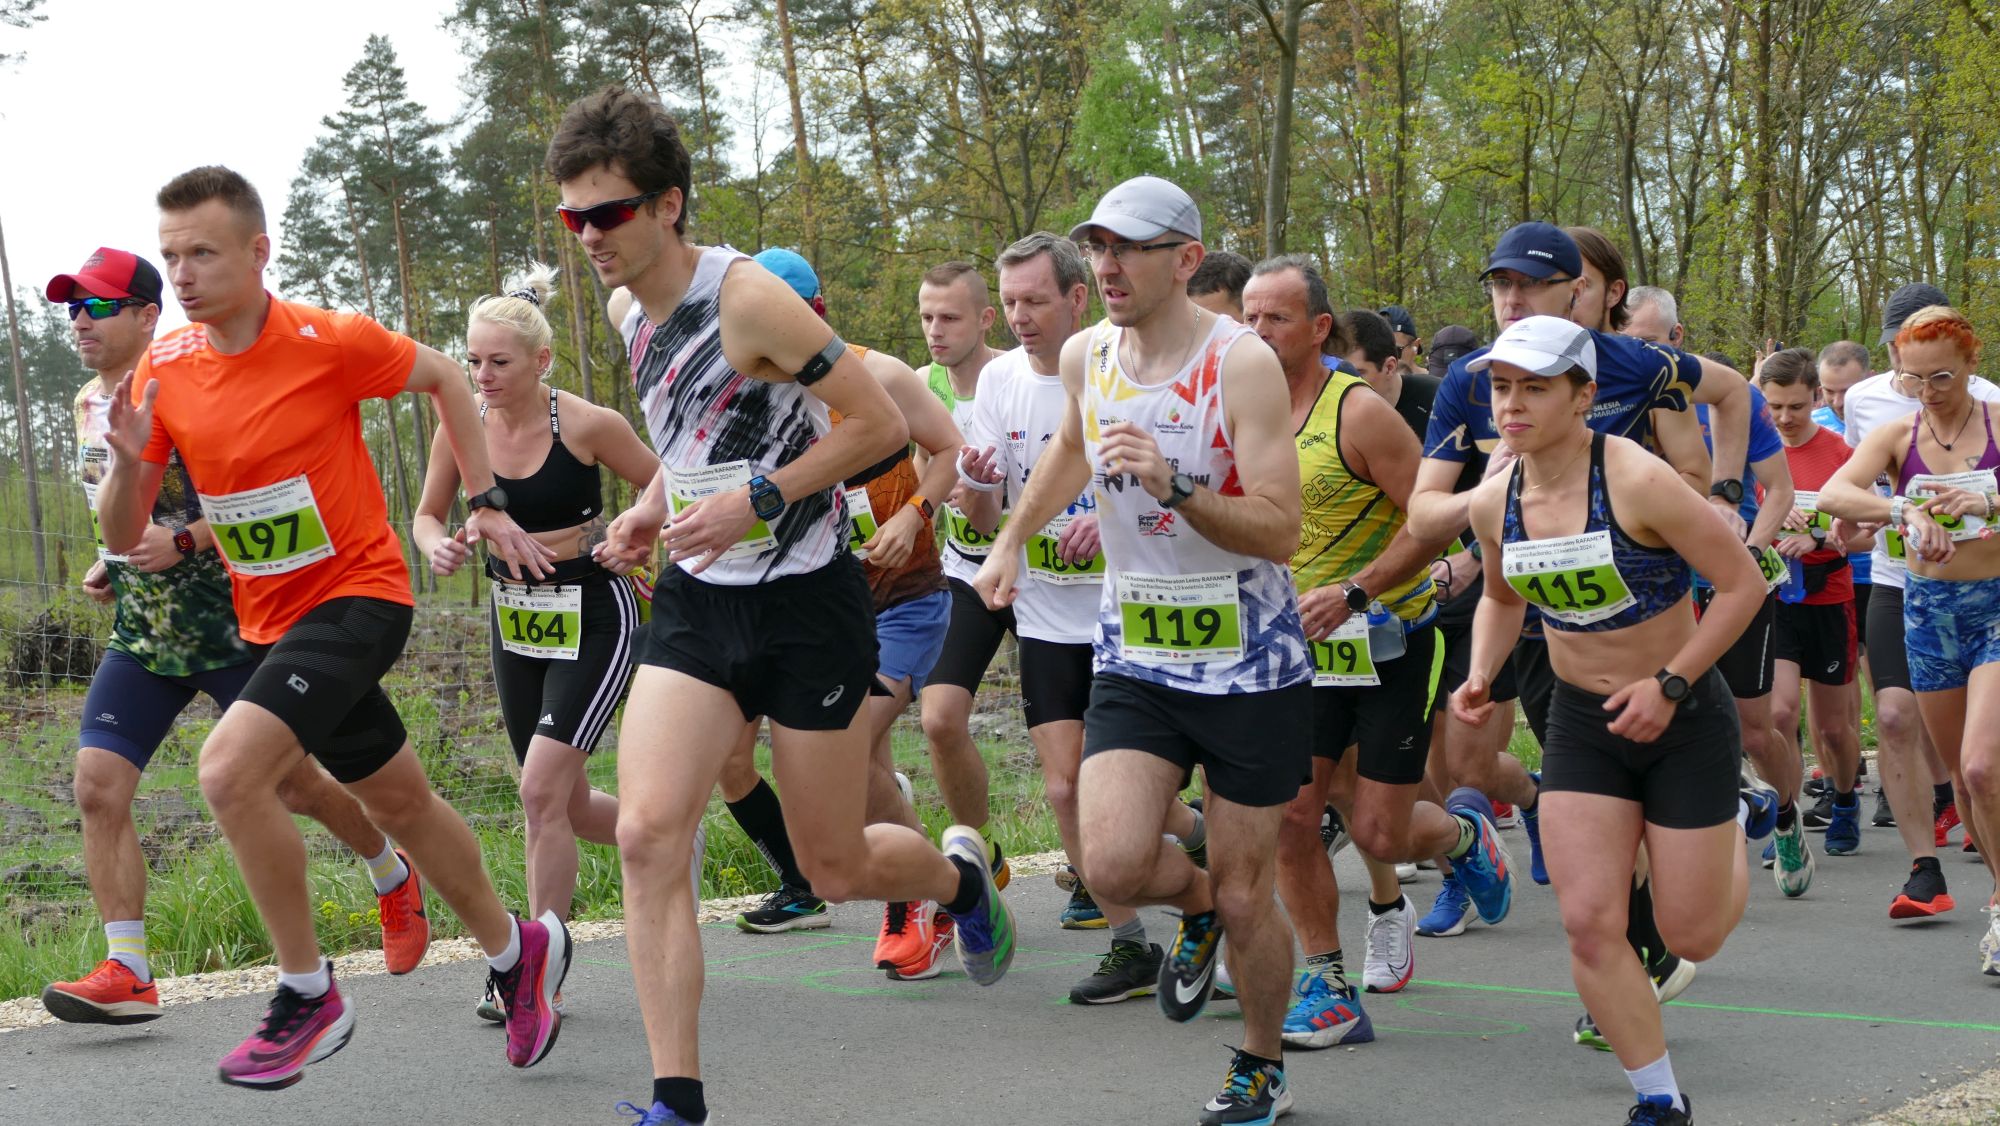 W biegu głównym pobiegło 91 zawodników. W sumie we wszystkich trzech kategoriach udział wzięło 168 osób